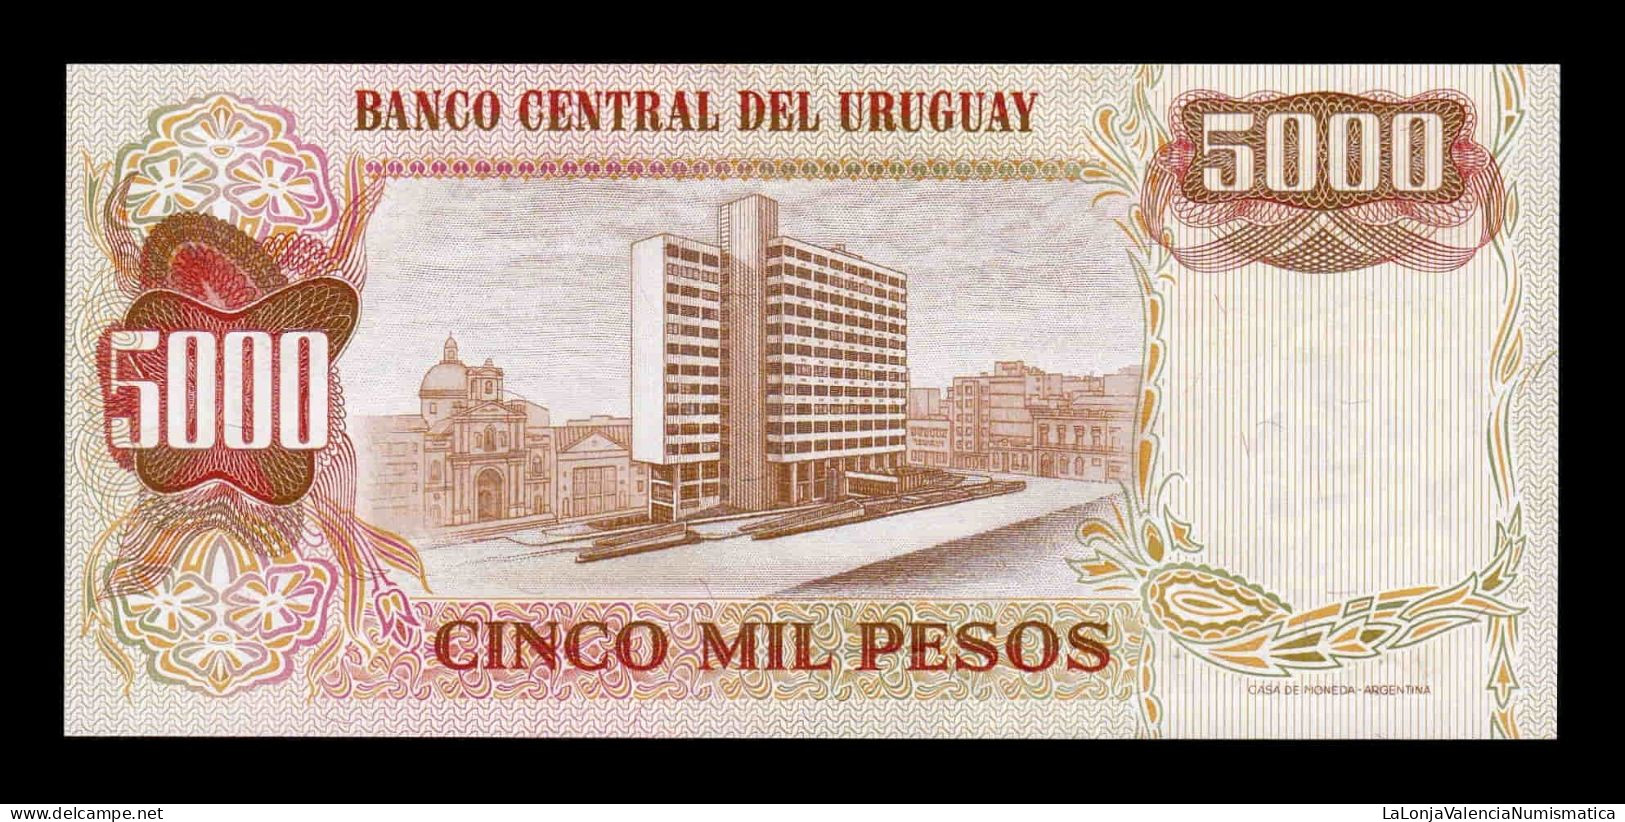 Uruguay 5 Nuevos Pesos On 5000 1975 Pick 57 Sc Unc - Uruguay